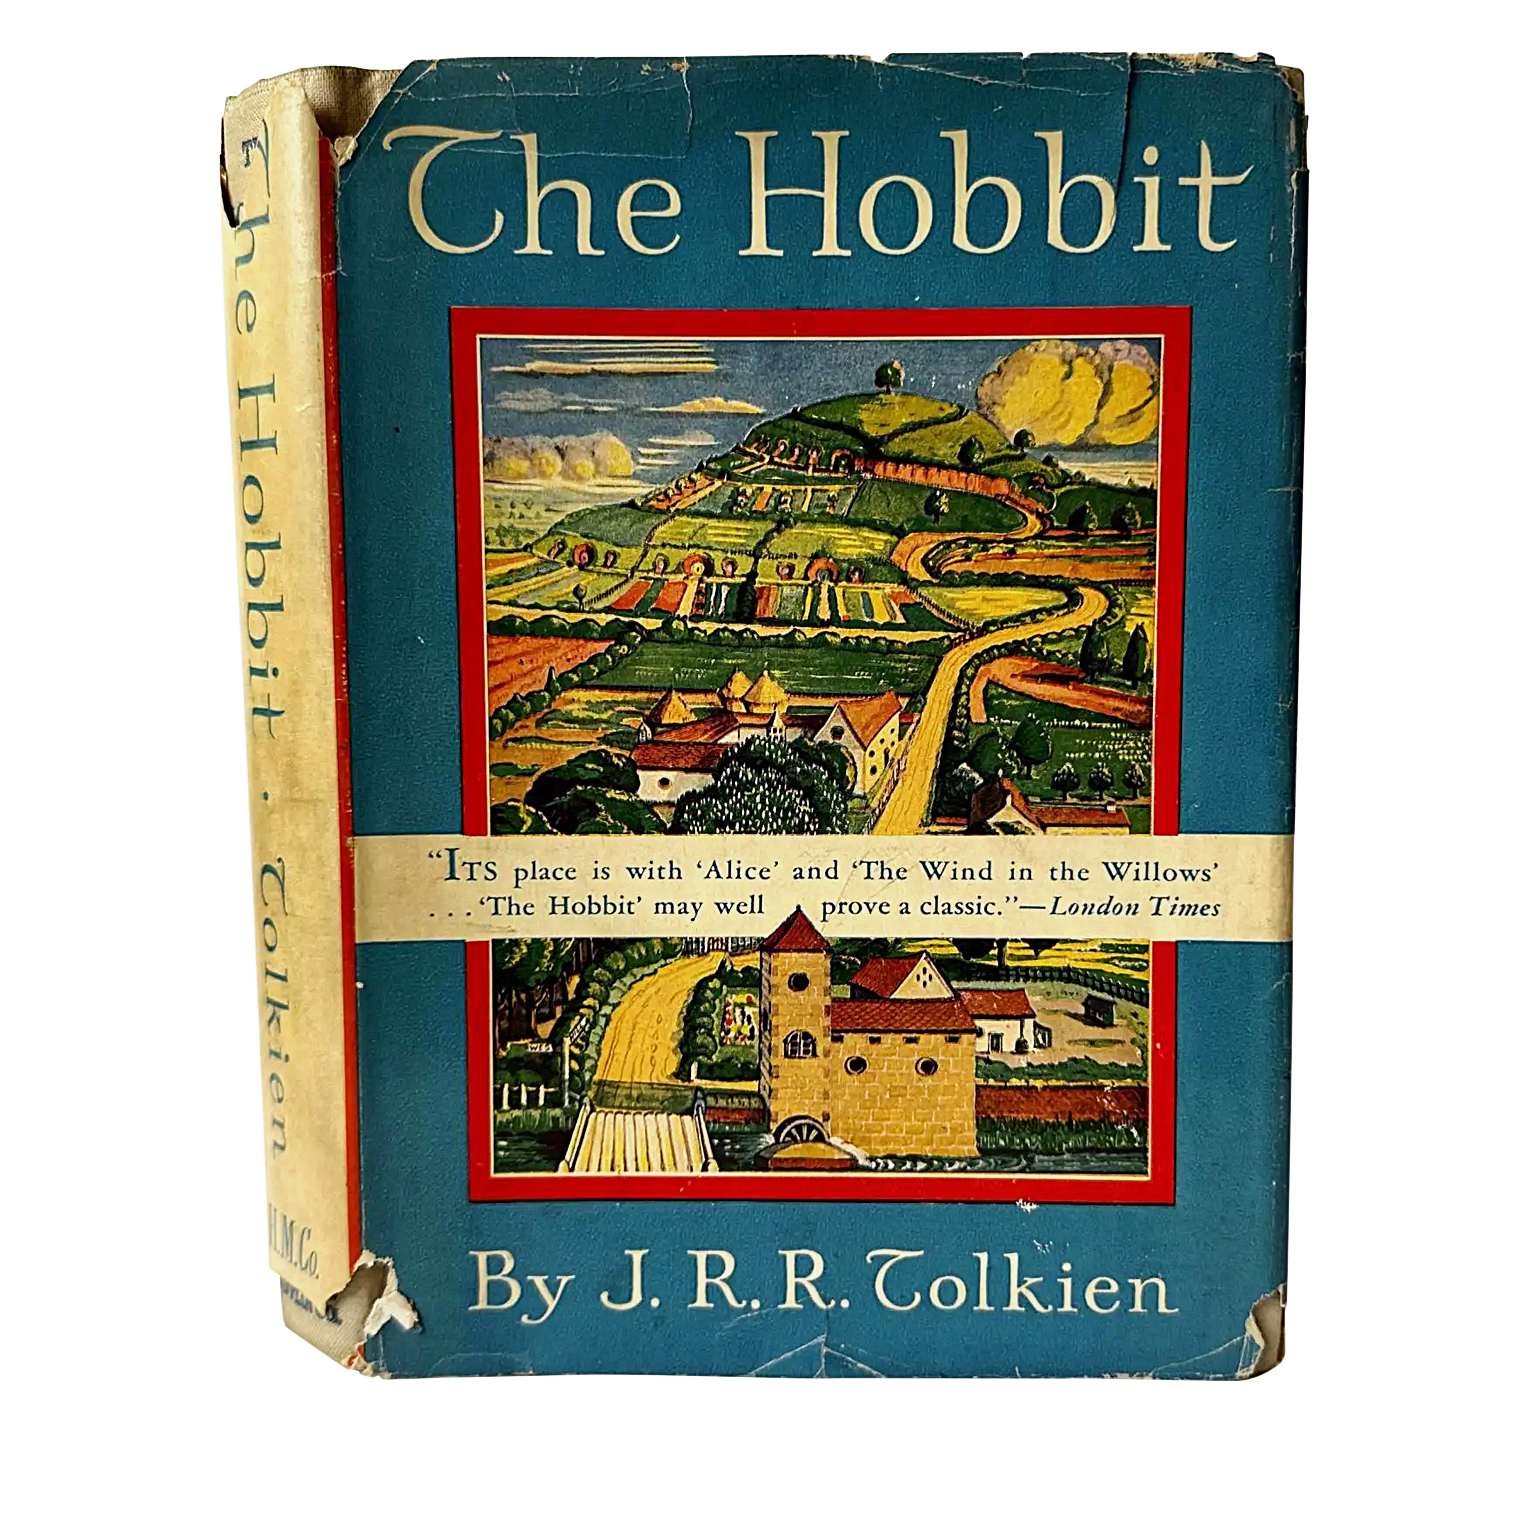 j.r.r.-tolkien-the-hobbit-first-edition-dust-jacket.jpg